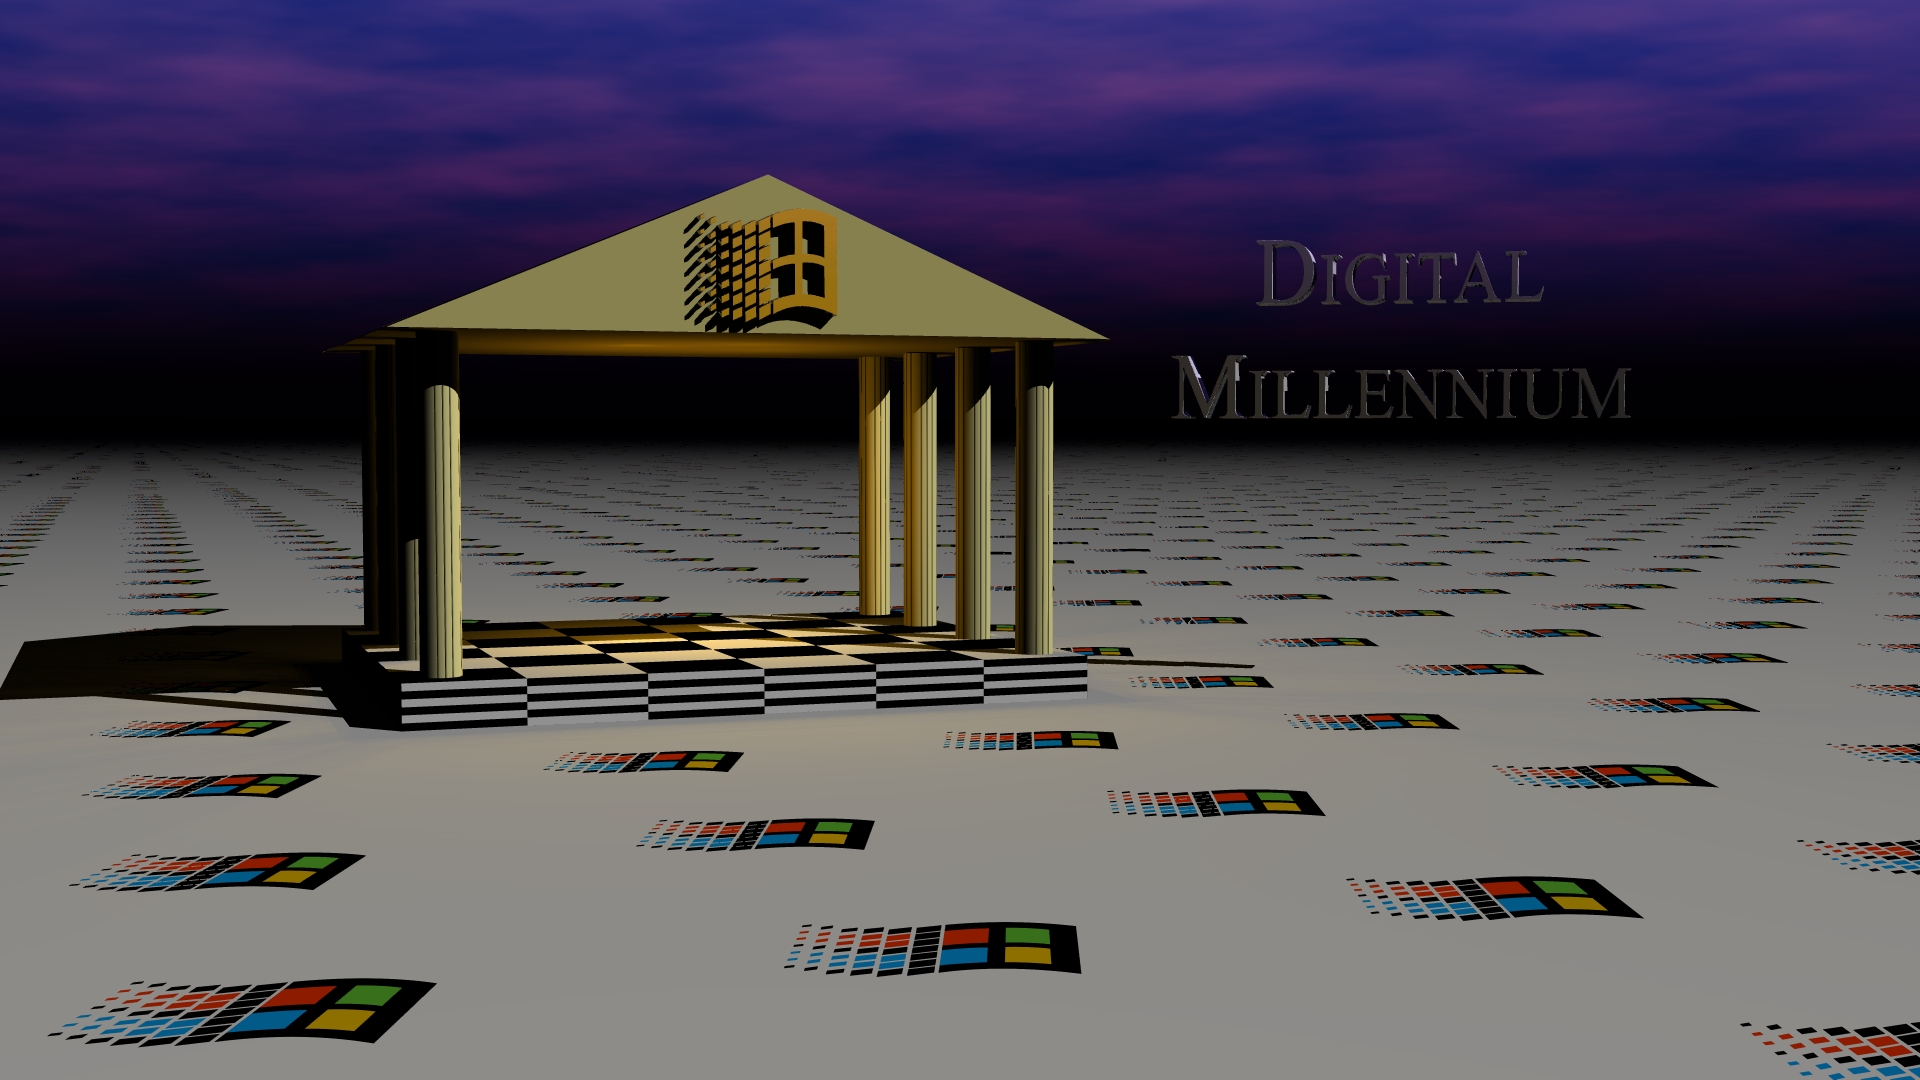 Digital Millennium